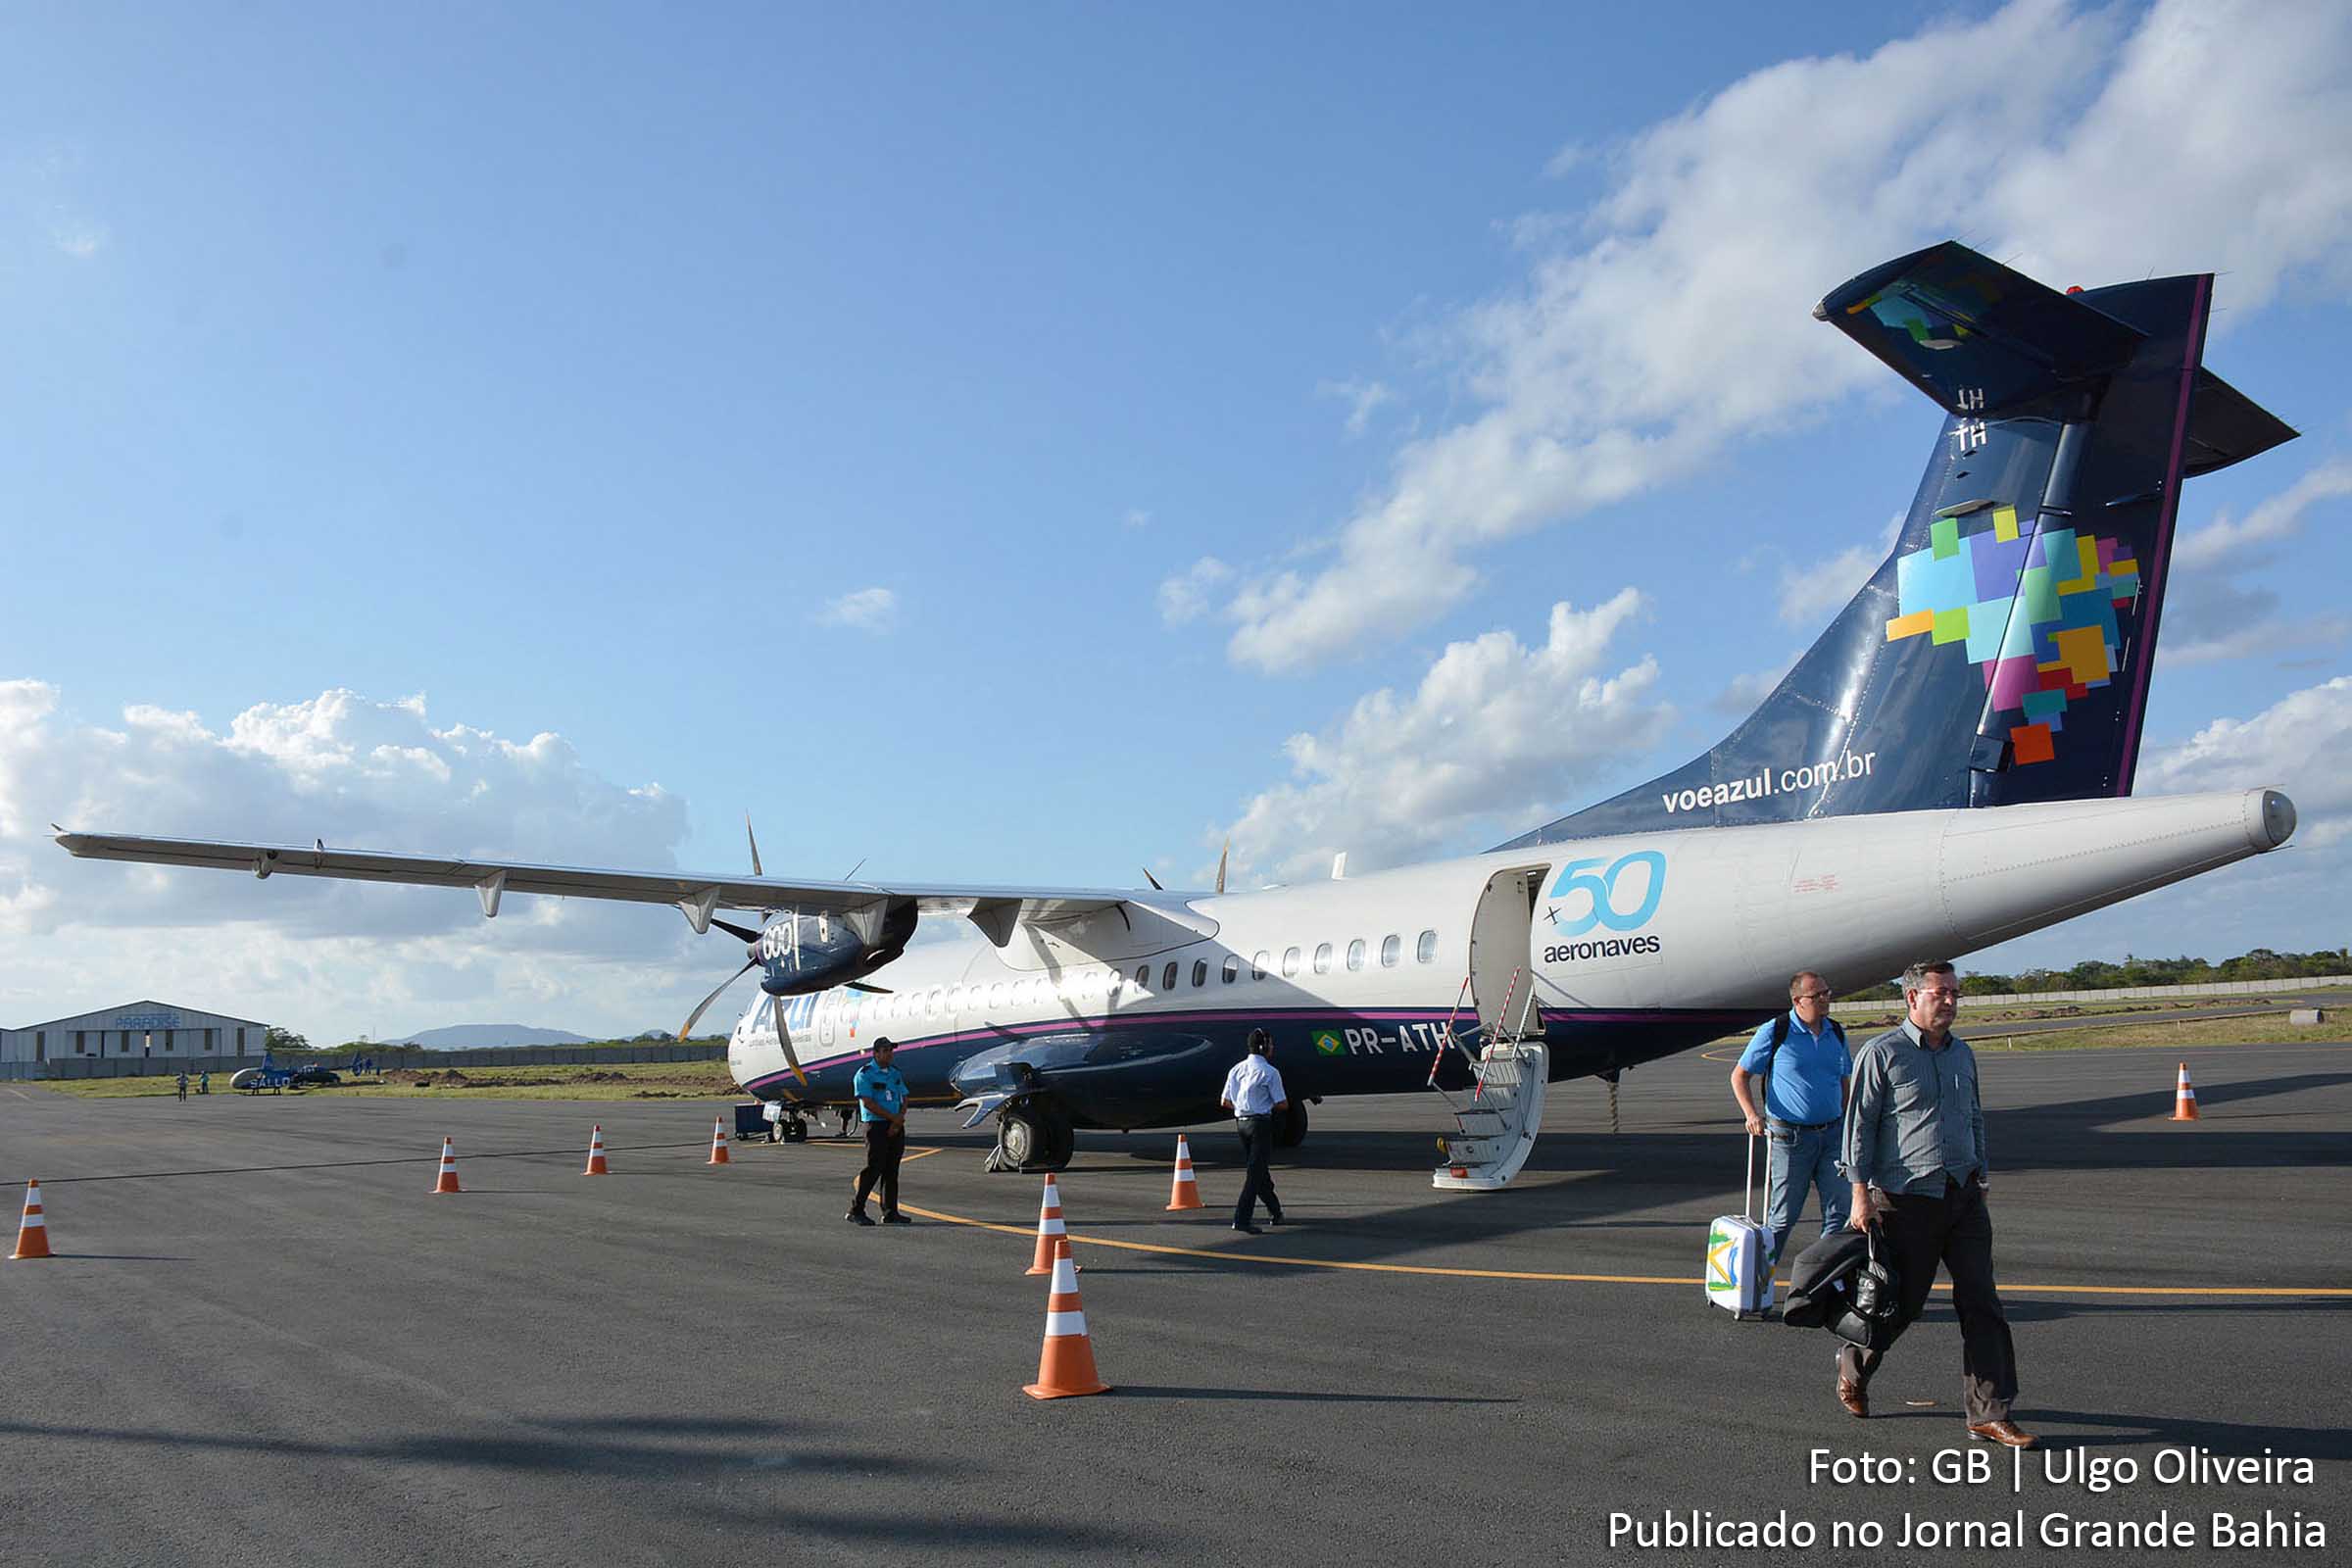 Segundo Governo do Estado, foram realizadas obras de melhorias e ampliação dos terminais baianos e novos voos regulares foram criados. Imagem da pista de pouso e decolagem do Aeroporto Regional de Feira de Santana.